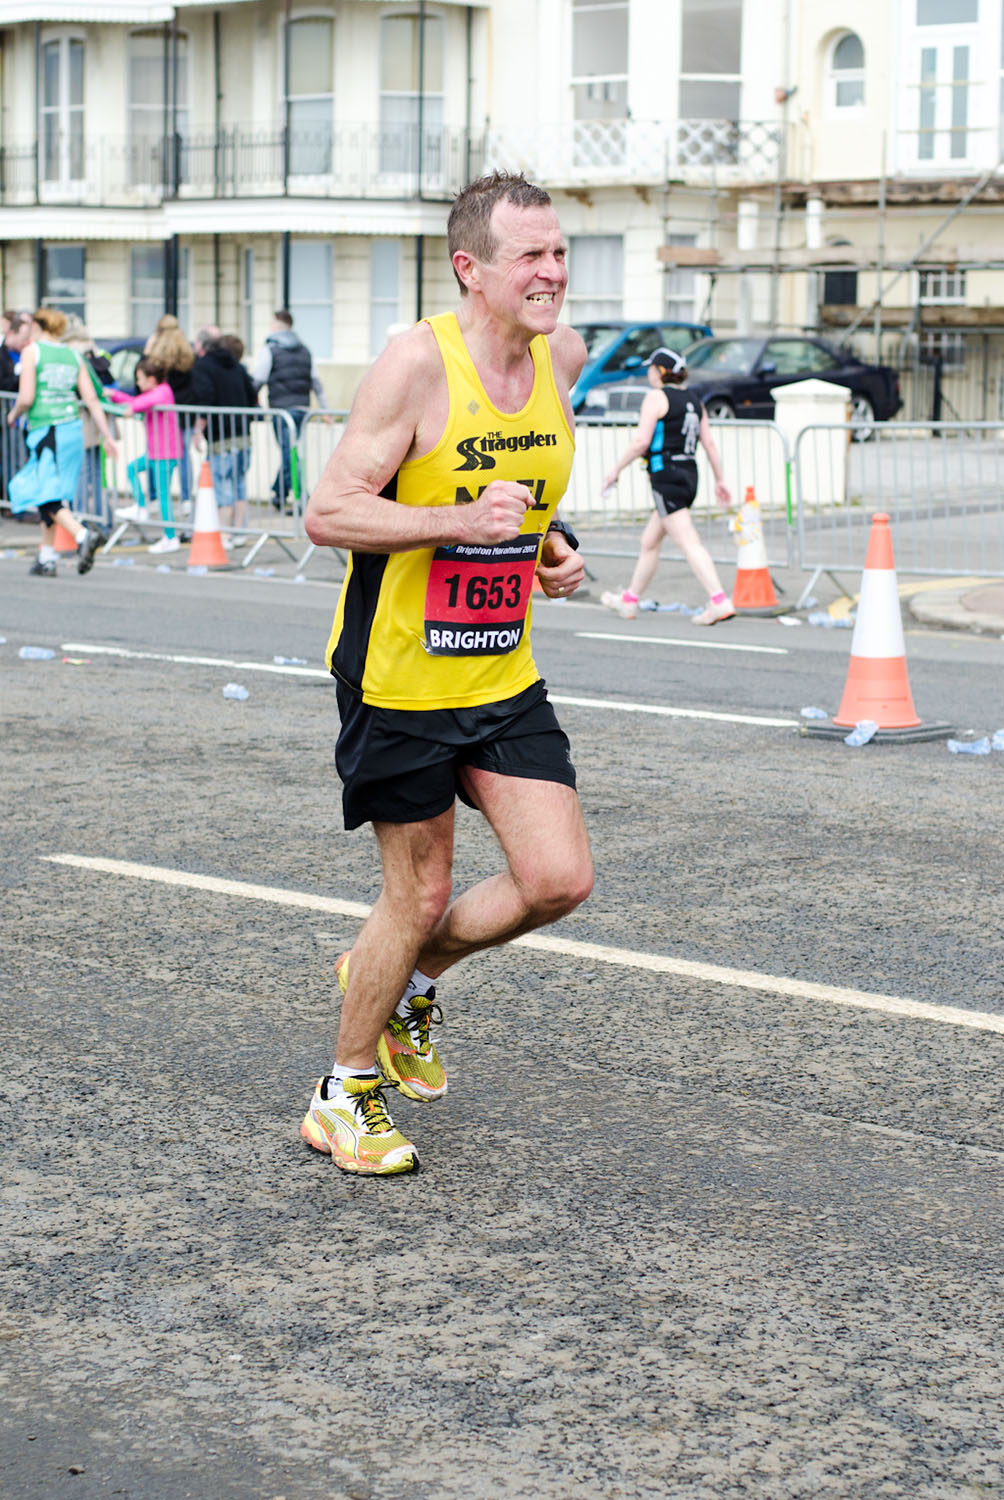  Brighton Marathon 2013 - Mile 24.75 